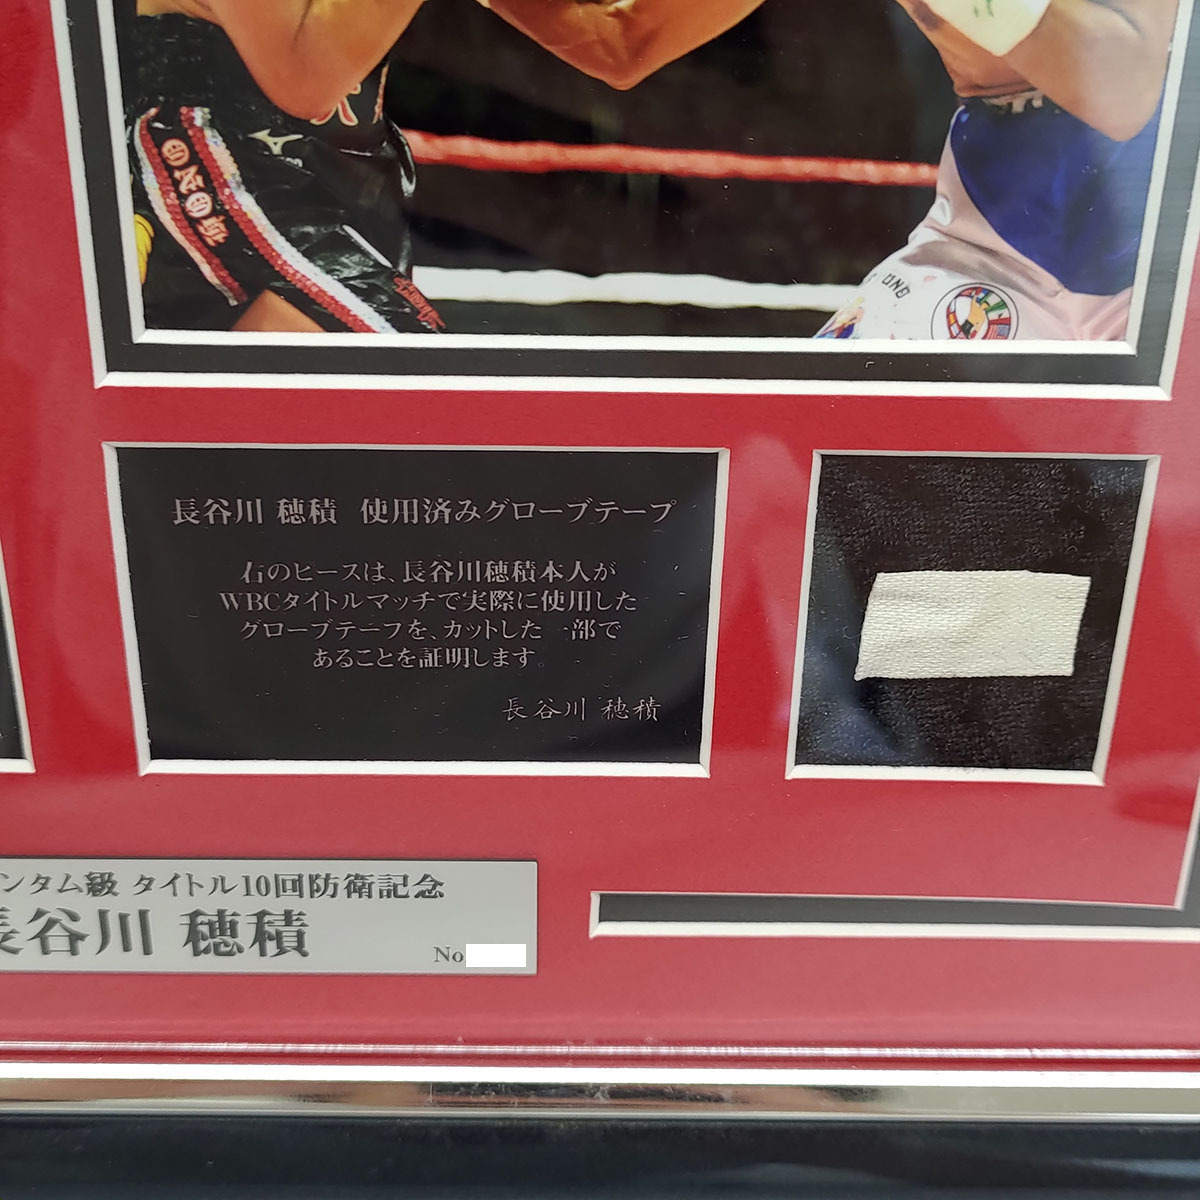 2点セット] ボクシング 長谷川穂積 WBC世界バンダム級 10回防衛記念